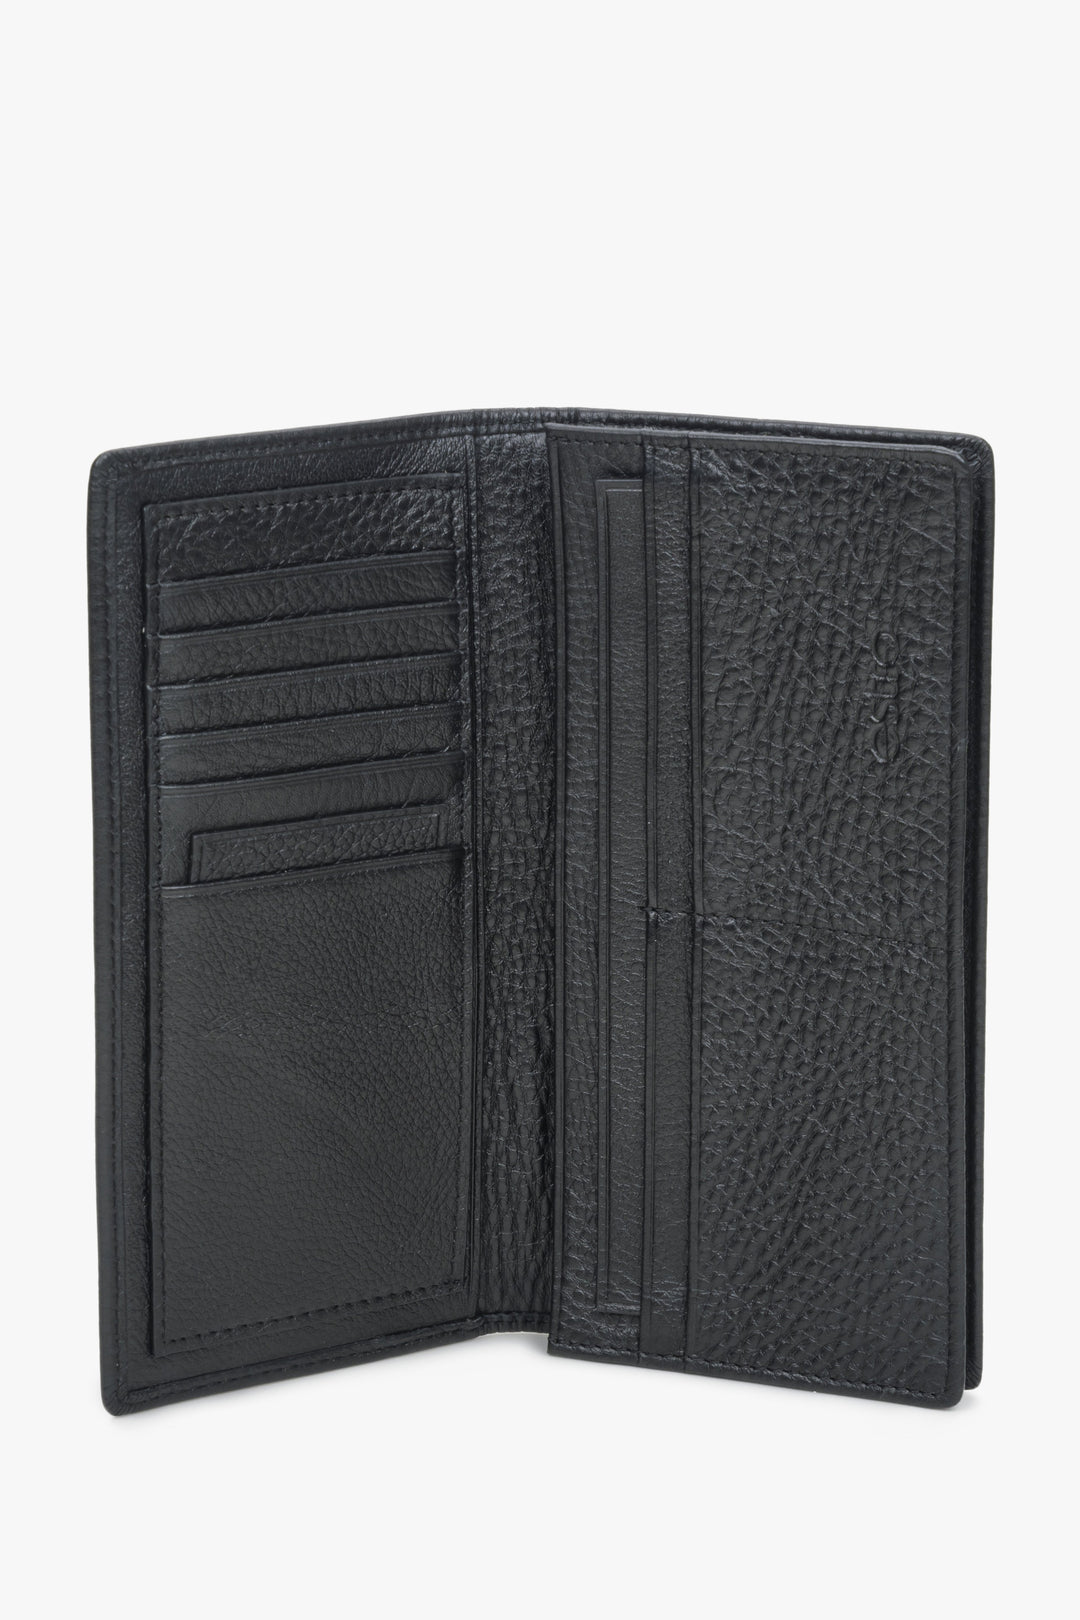 Estro black leather men's wallet.